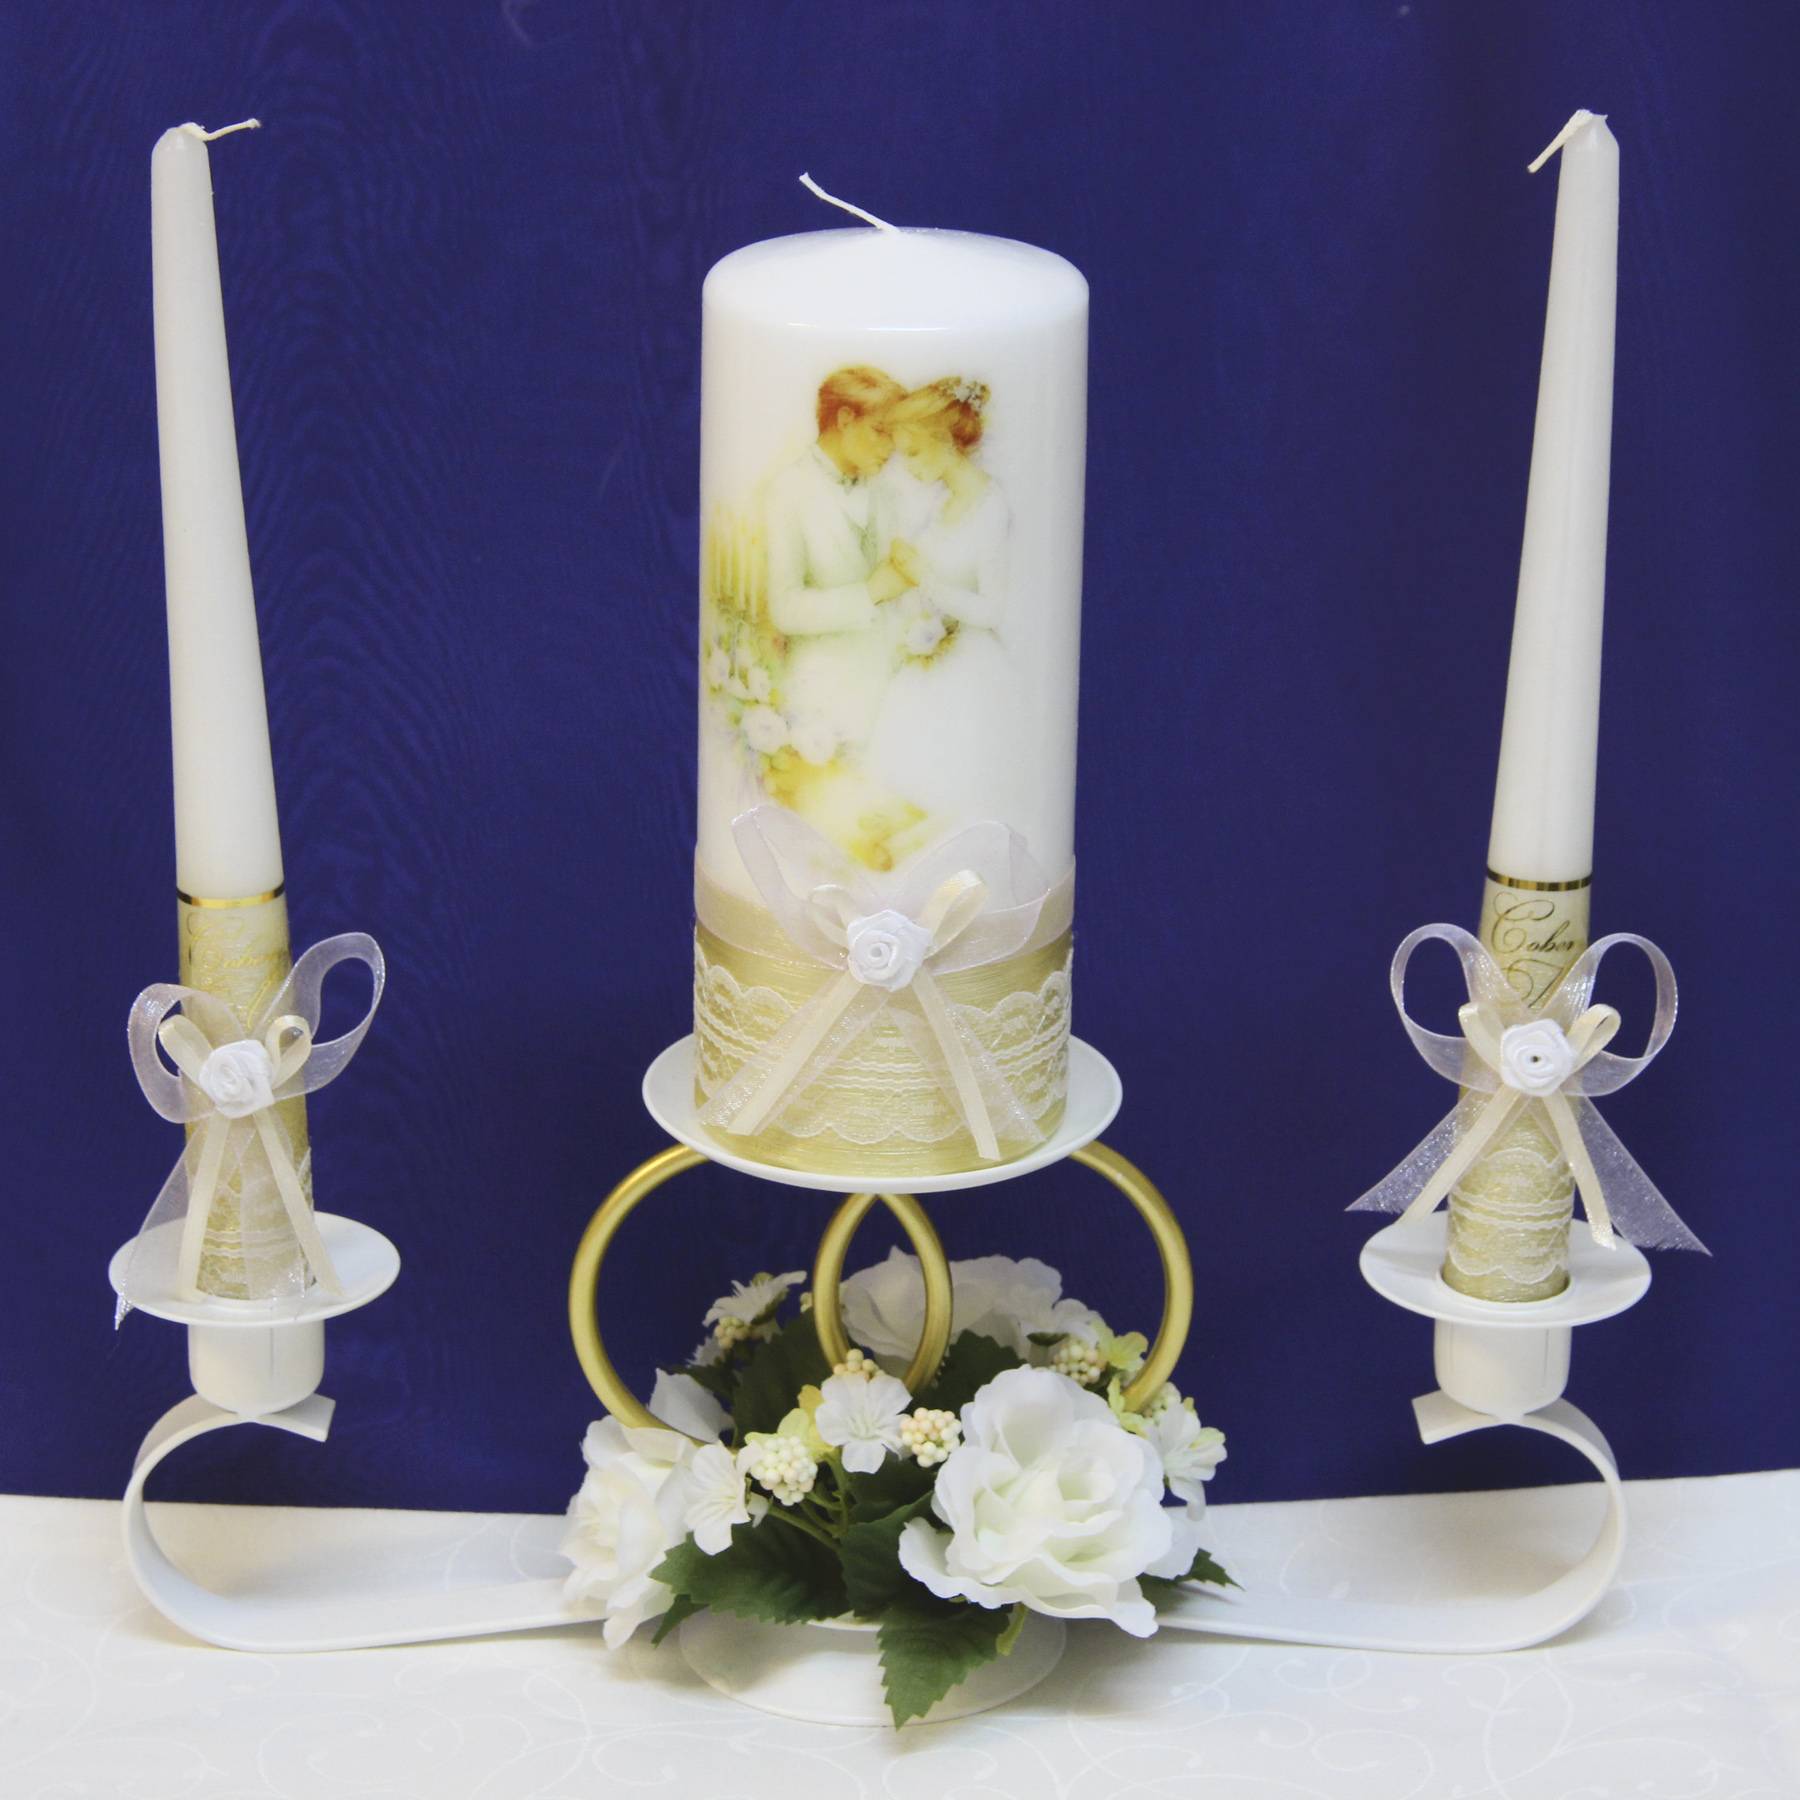 Свадебные свечи своими руками: несколько простых мастер-классов